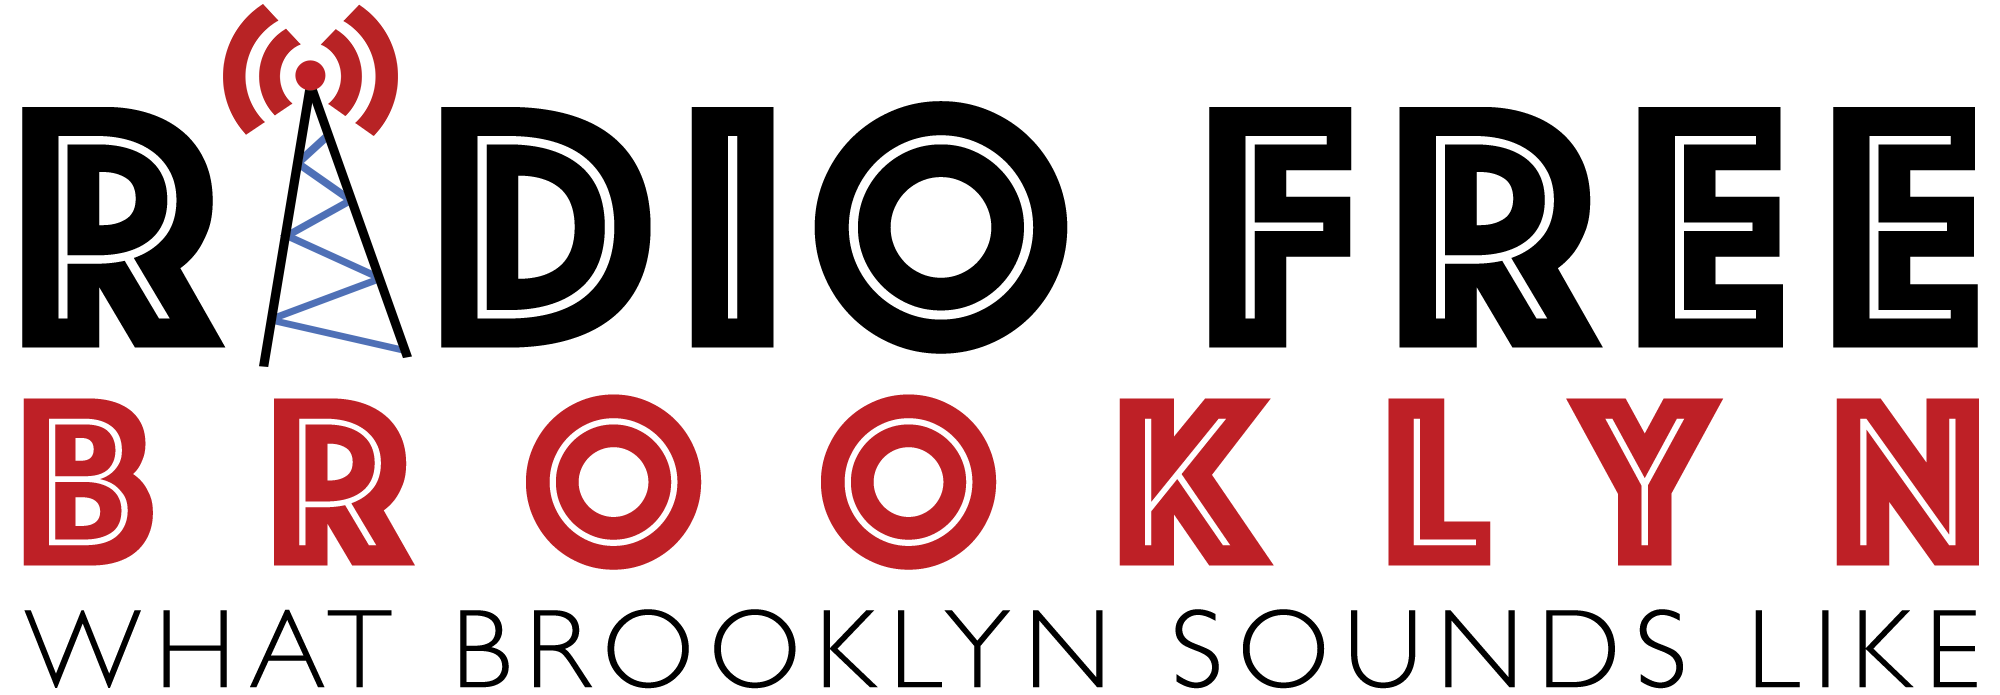 Radio Free Brooklyn logo